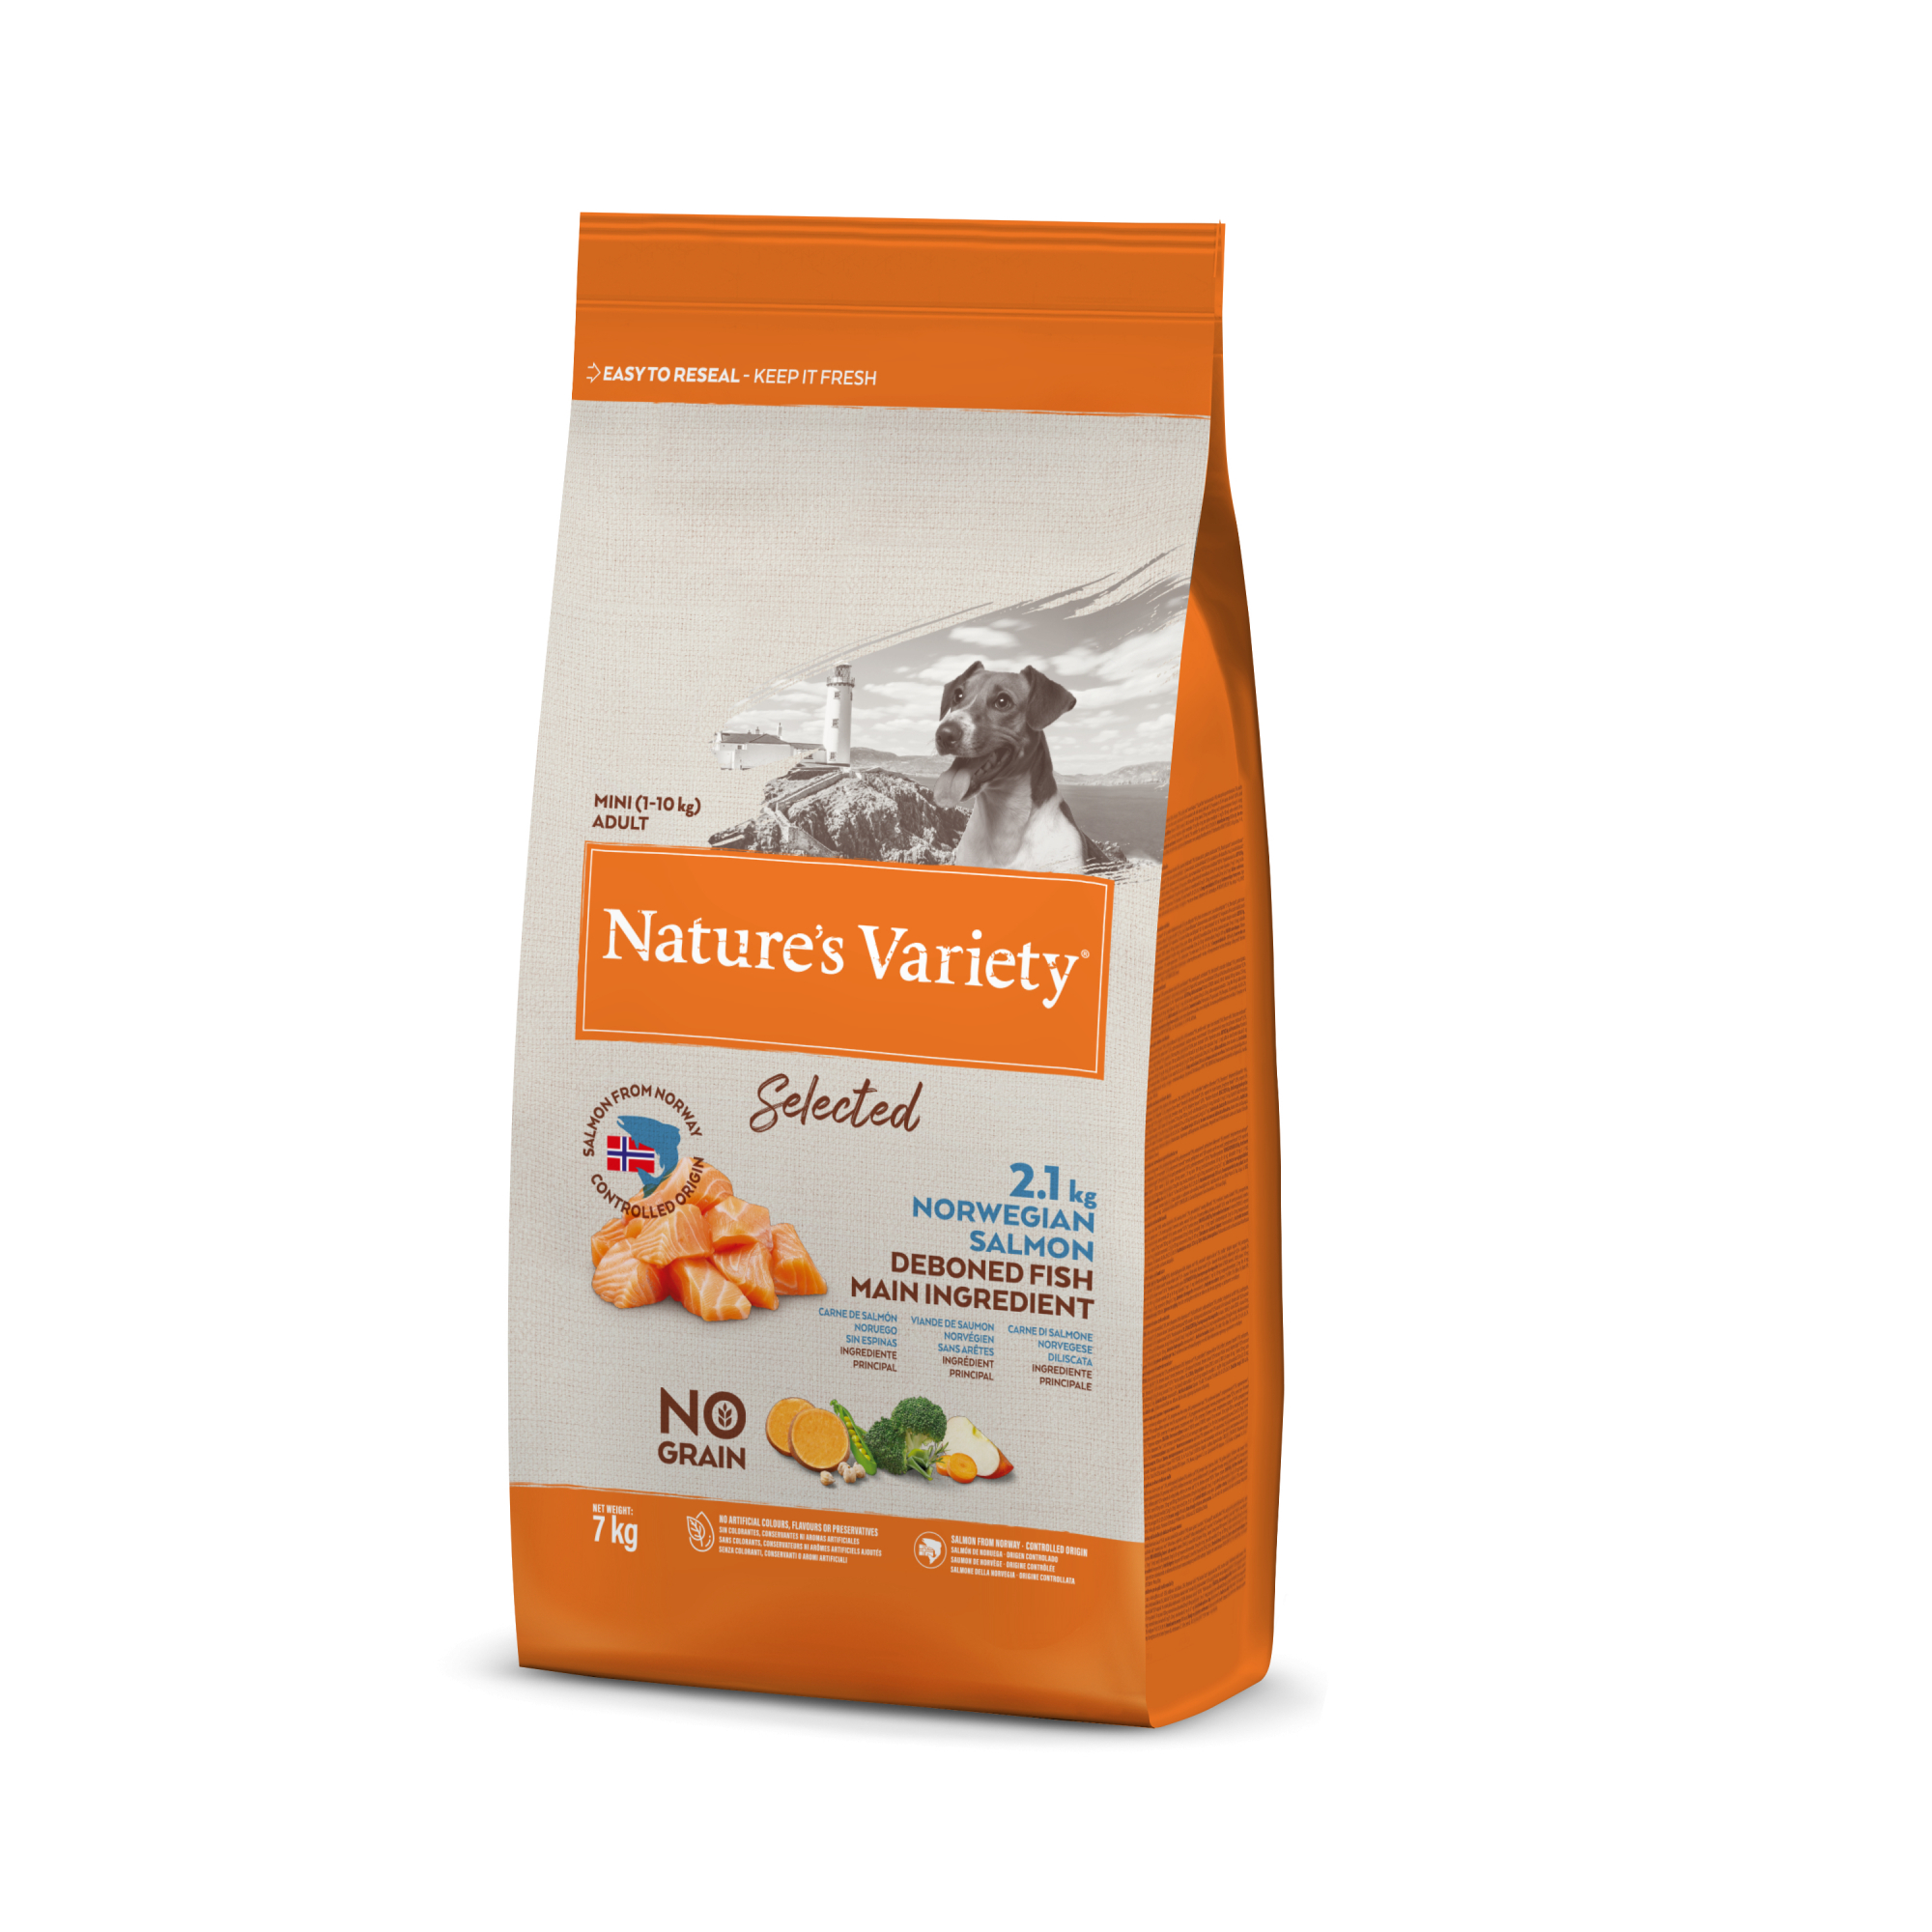 NATURE'S VARIETY Selected Salmón de Noruega sin cereales para perros pequeños